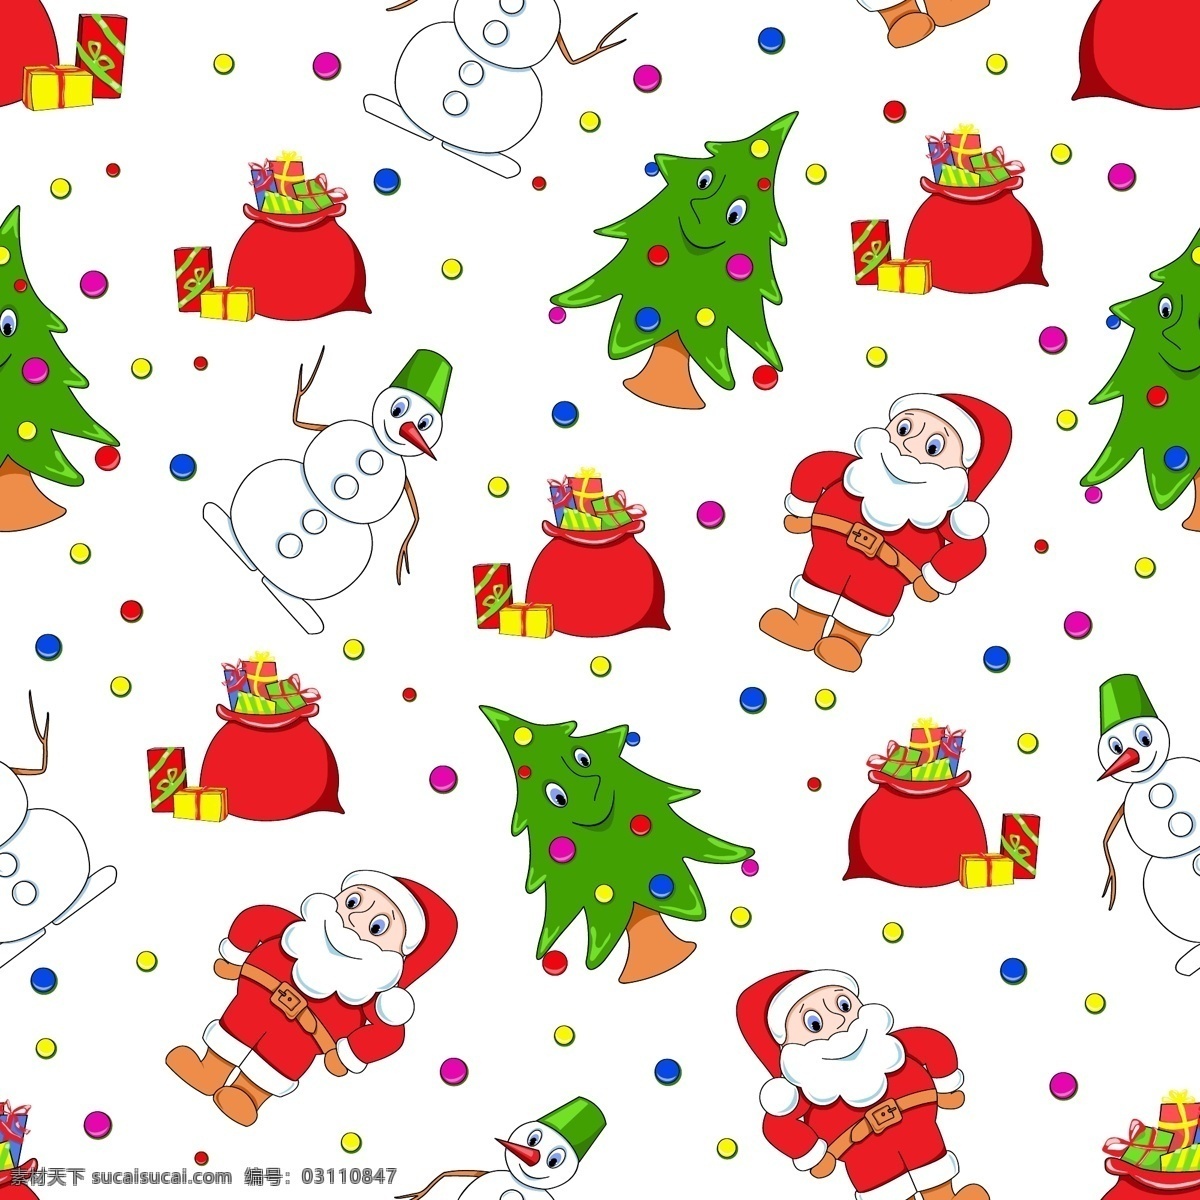 圣诞老人 雪人 圣诞树 矢量 插画 花纹 精美 卡通 可爱 礼盒 礼物 连续 圣诞节 纹样 矢量素材 节日素材